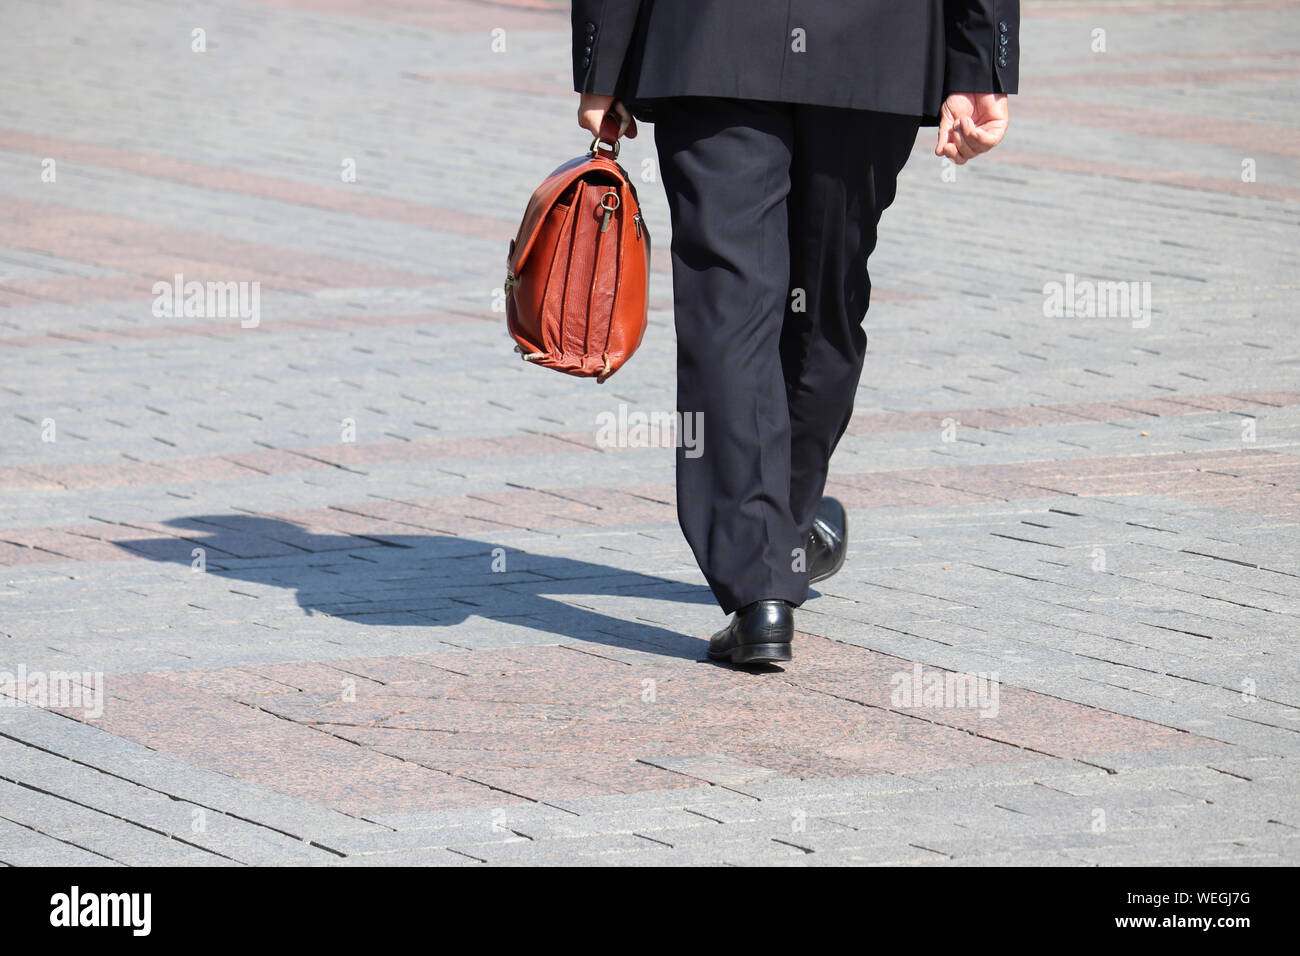 Hombre en un traje de negocios llevando maletín de cuero caminando por una calle, sombra negra sobre el pavimento. Concepto de empresario, funcionario, político, carrera Foto de stock